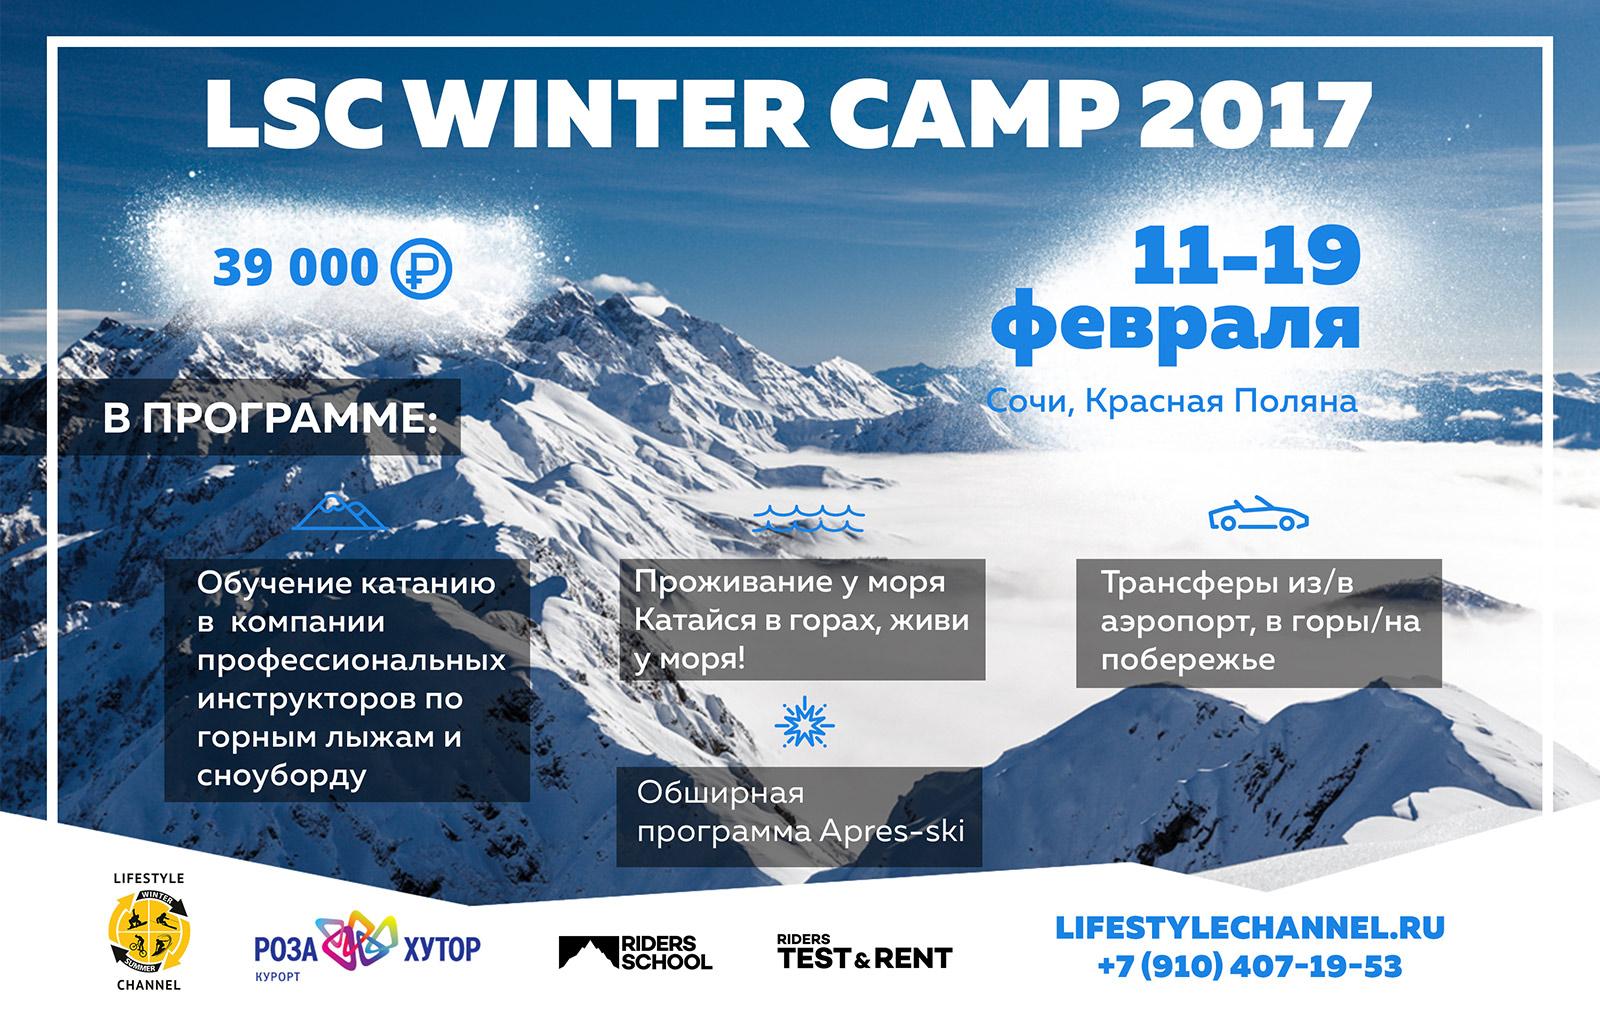 Зимний горнолыжно - сноубордический лагерь LSC WINTER CAMP 2017